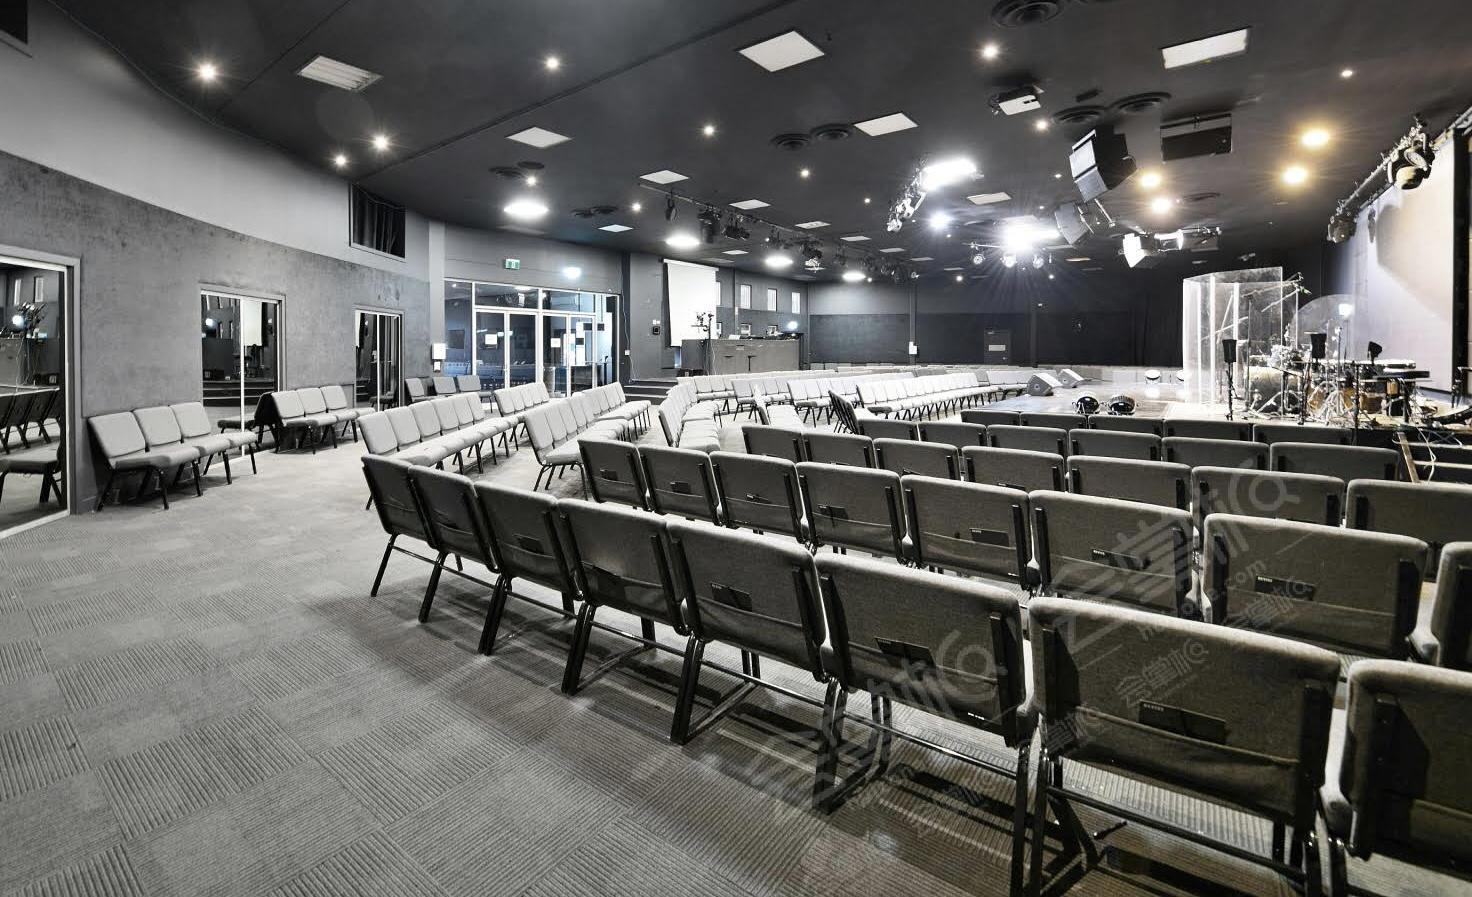 Auditorium 1 - New